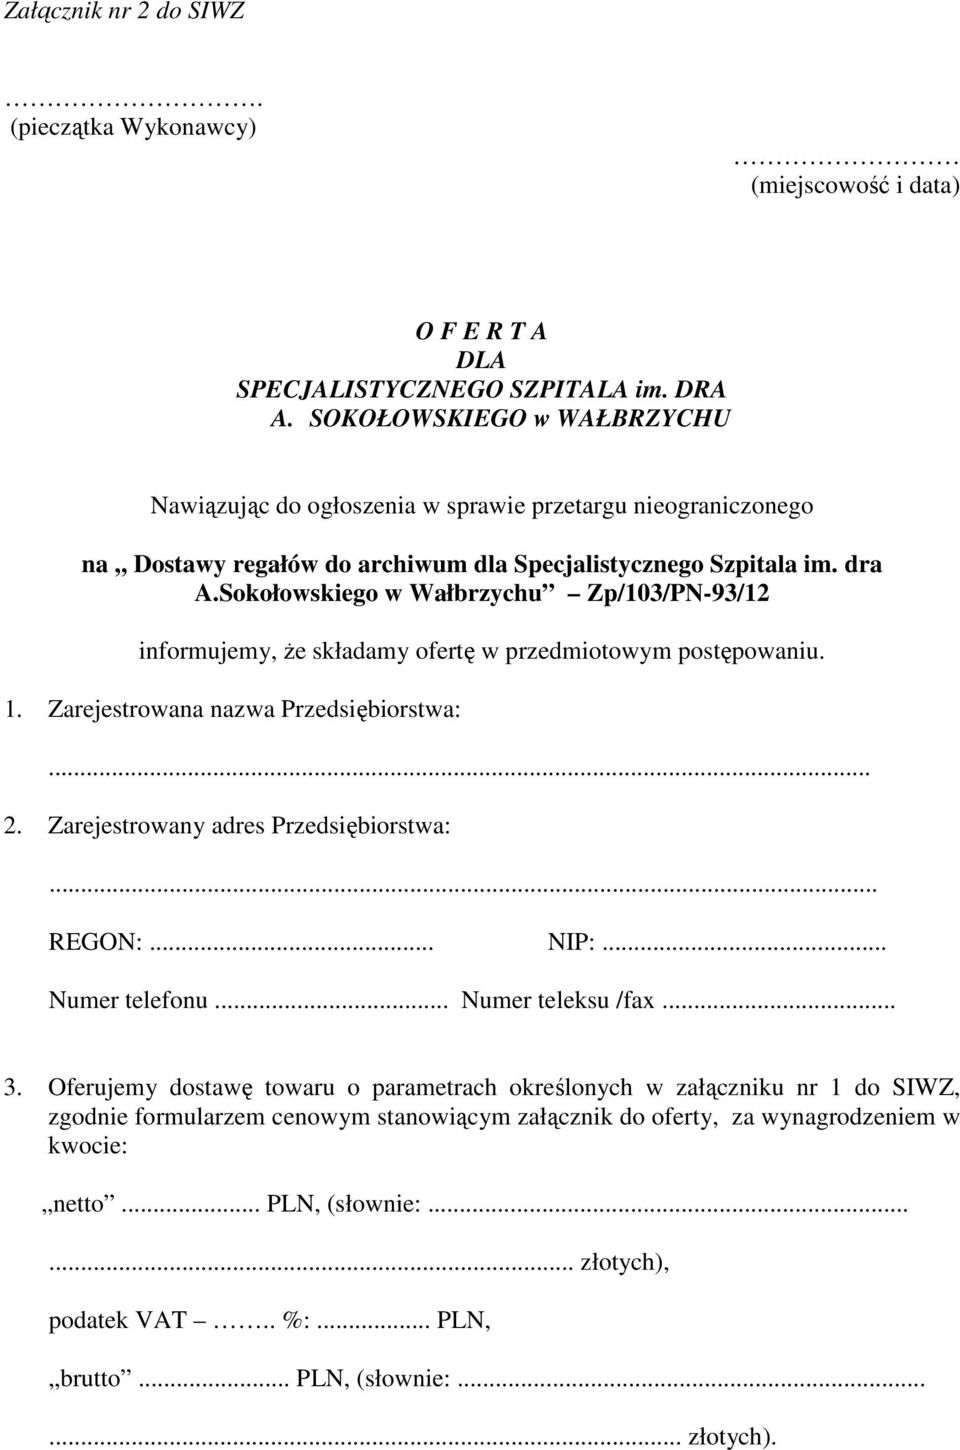 Sokołowskiego w Wałbrzychu Zp/103/PN-93/12 informujemy, Ŝe składamy ofertę w przedmiotowym postępowaniu. 1. Zarejestrowana nazwa Przedsiębiorstwa:... 2. Zarejestrowany adres Przedsiębiorstwa:... REGON:.